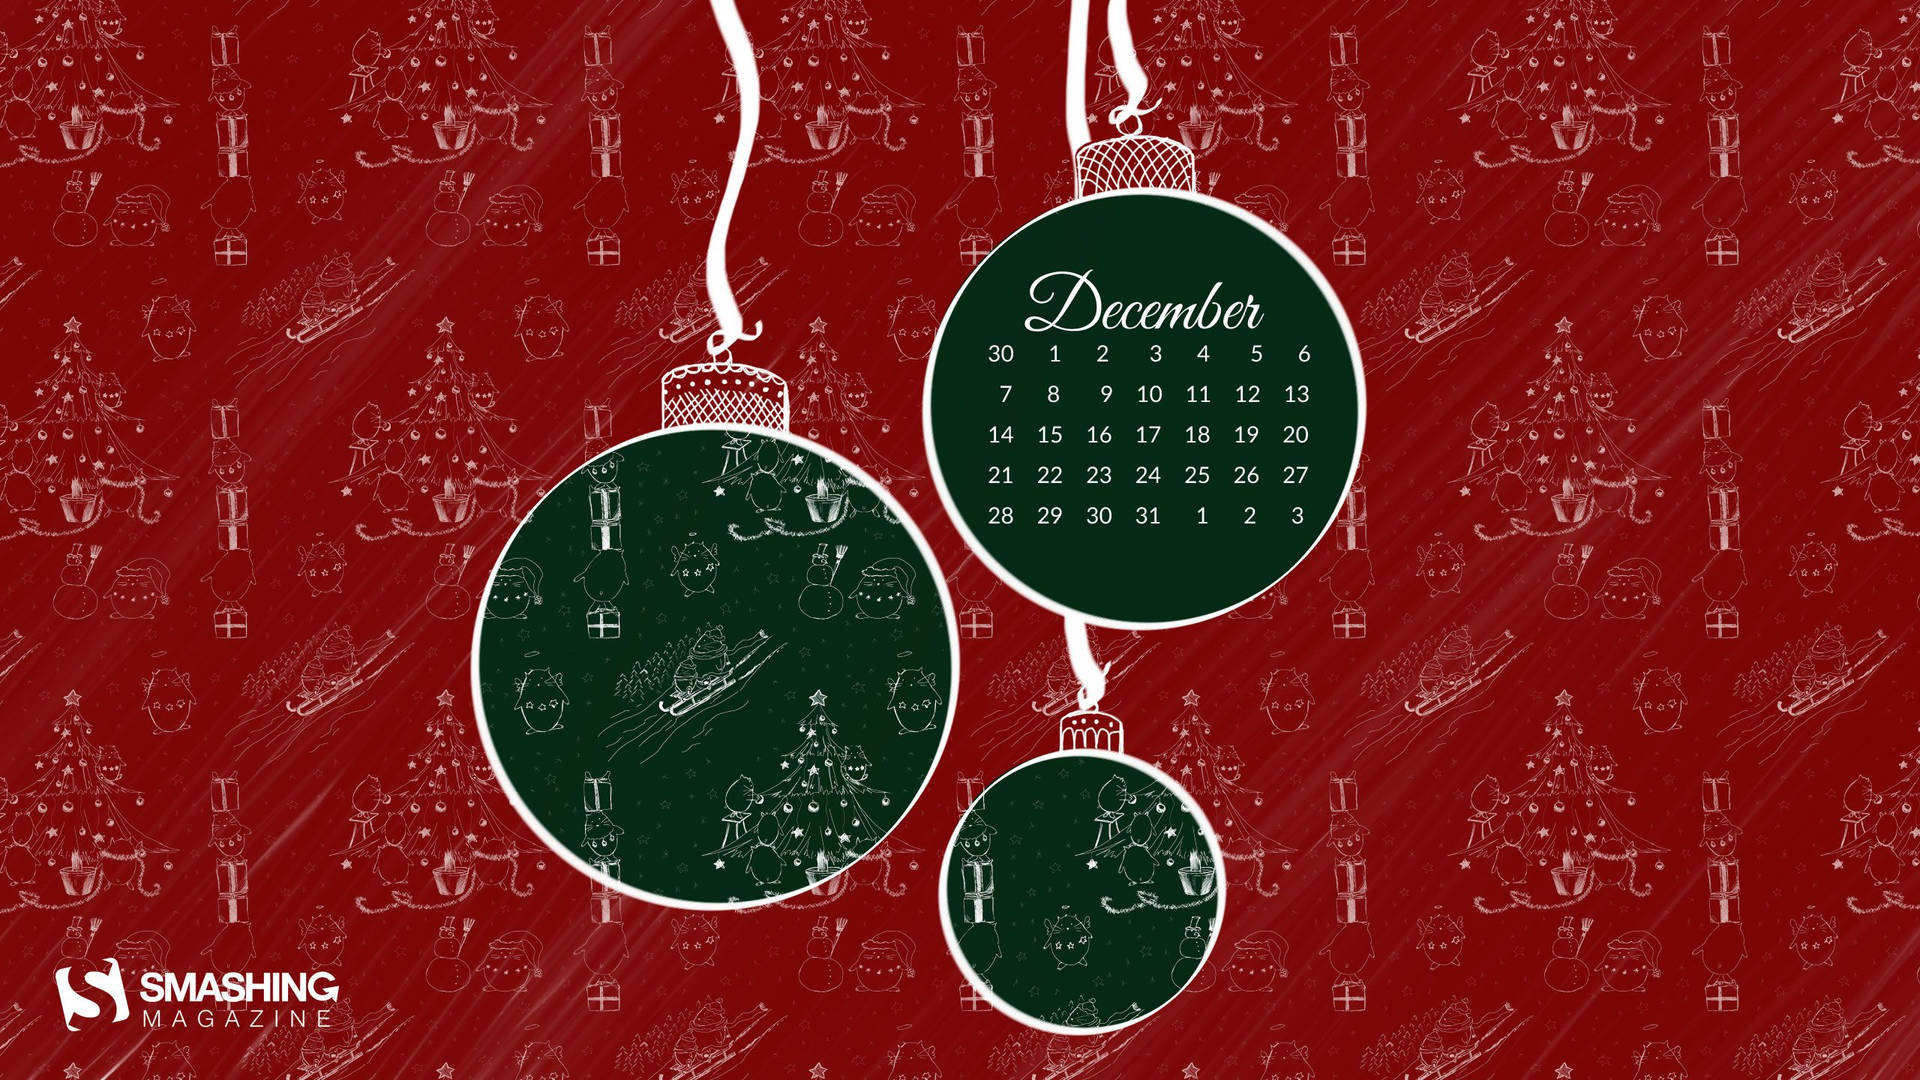 December Christmas Calendar Wallpaper